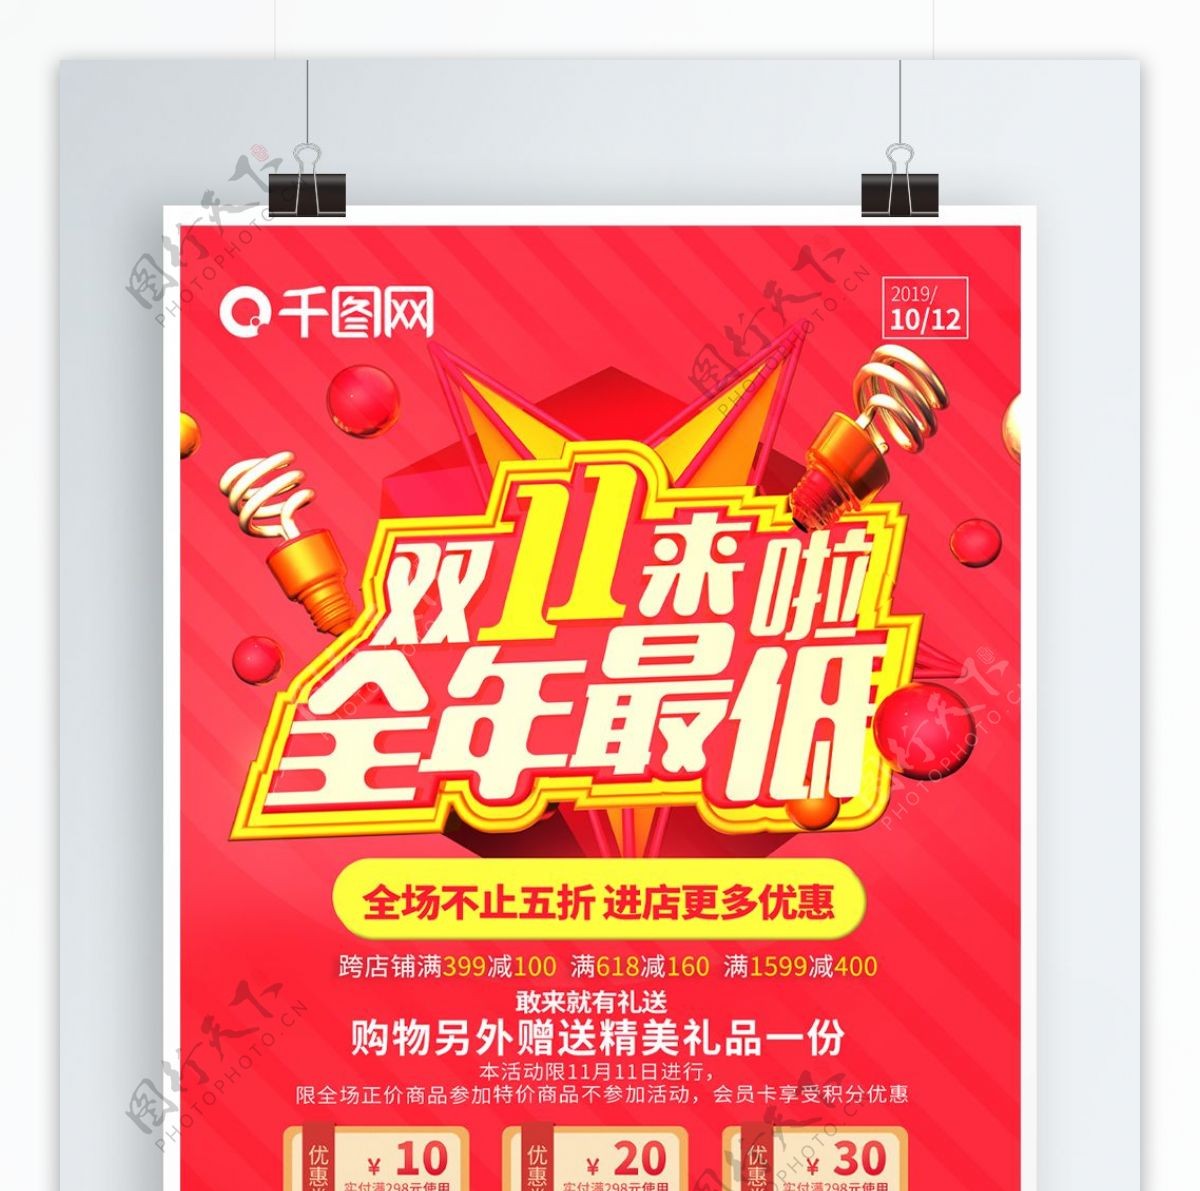 原创双十一红黄促销全年最低电商节海报